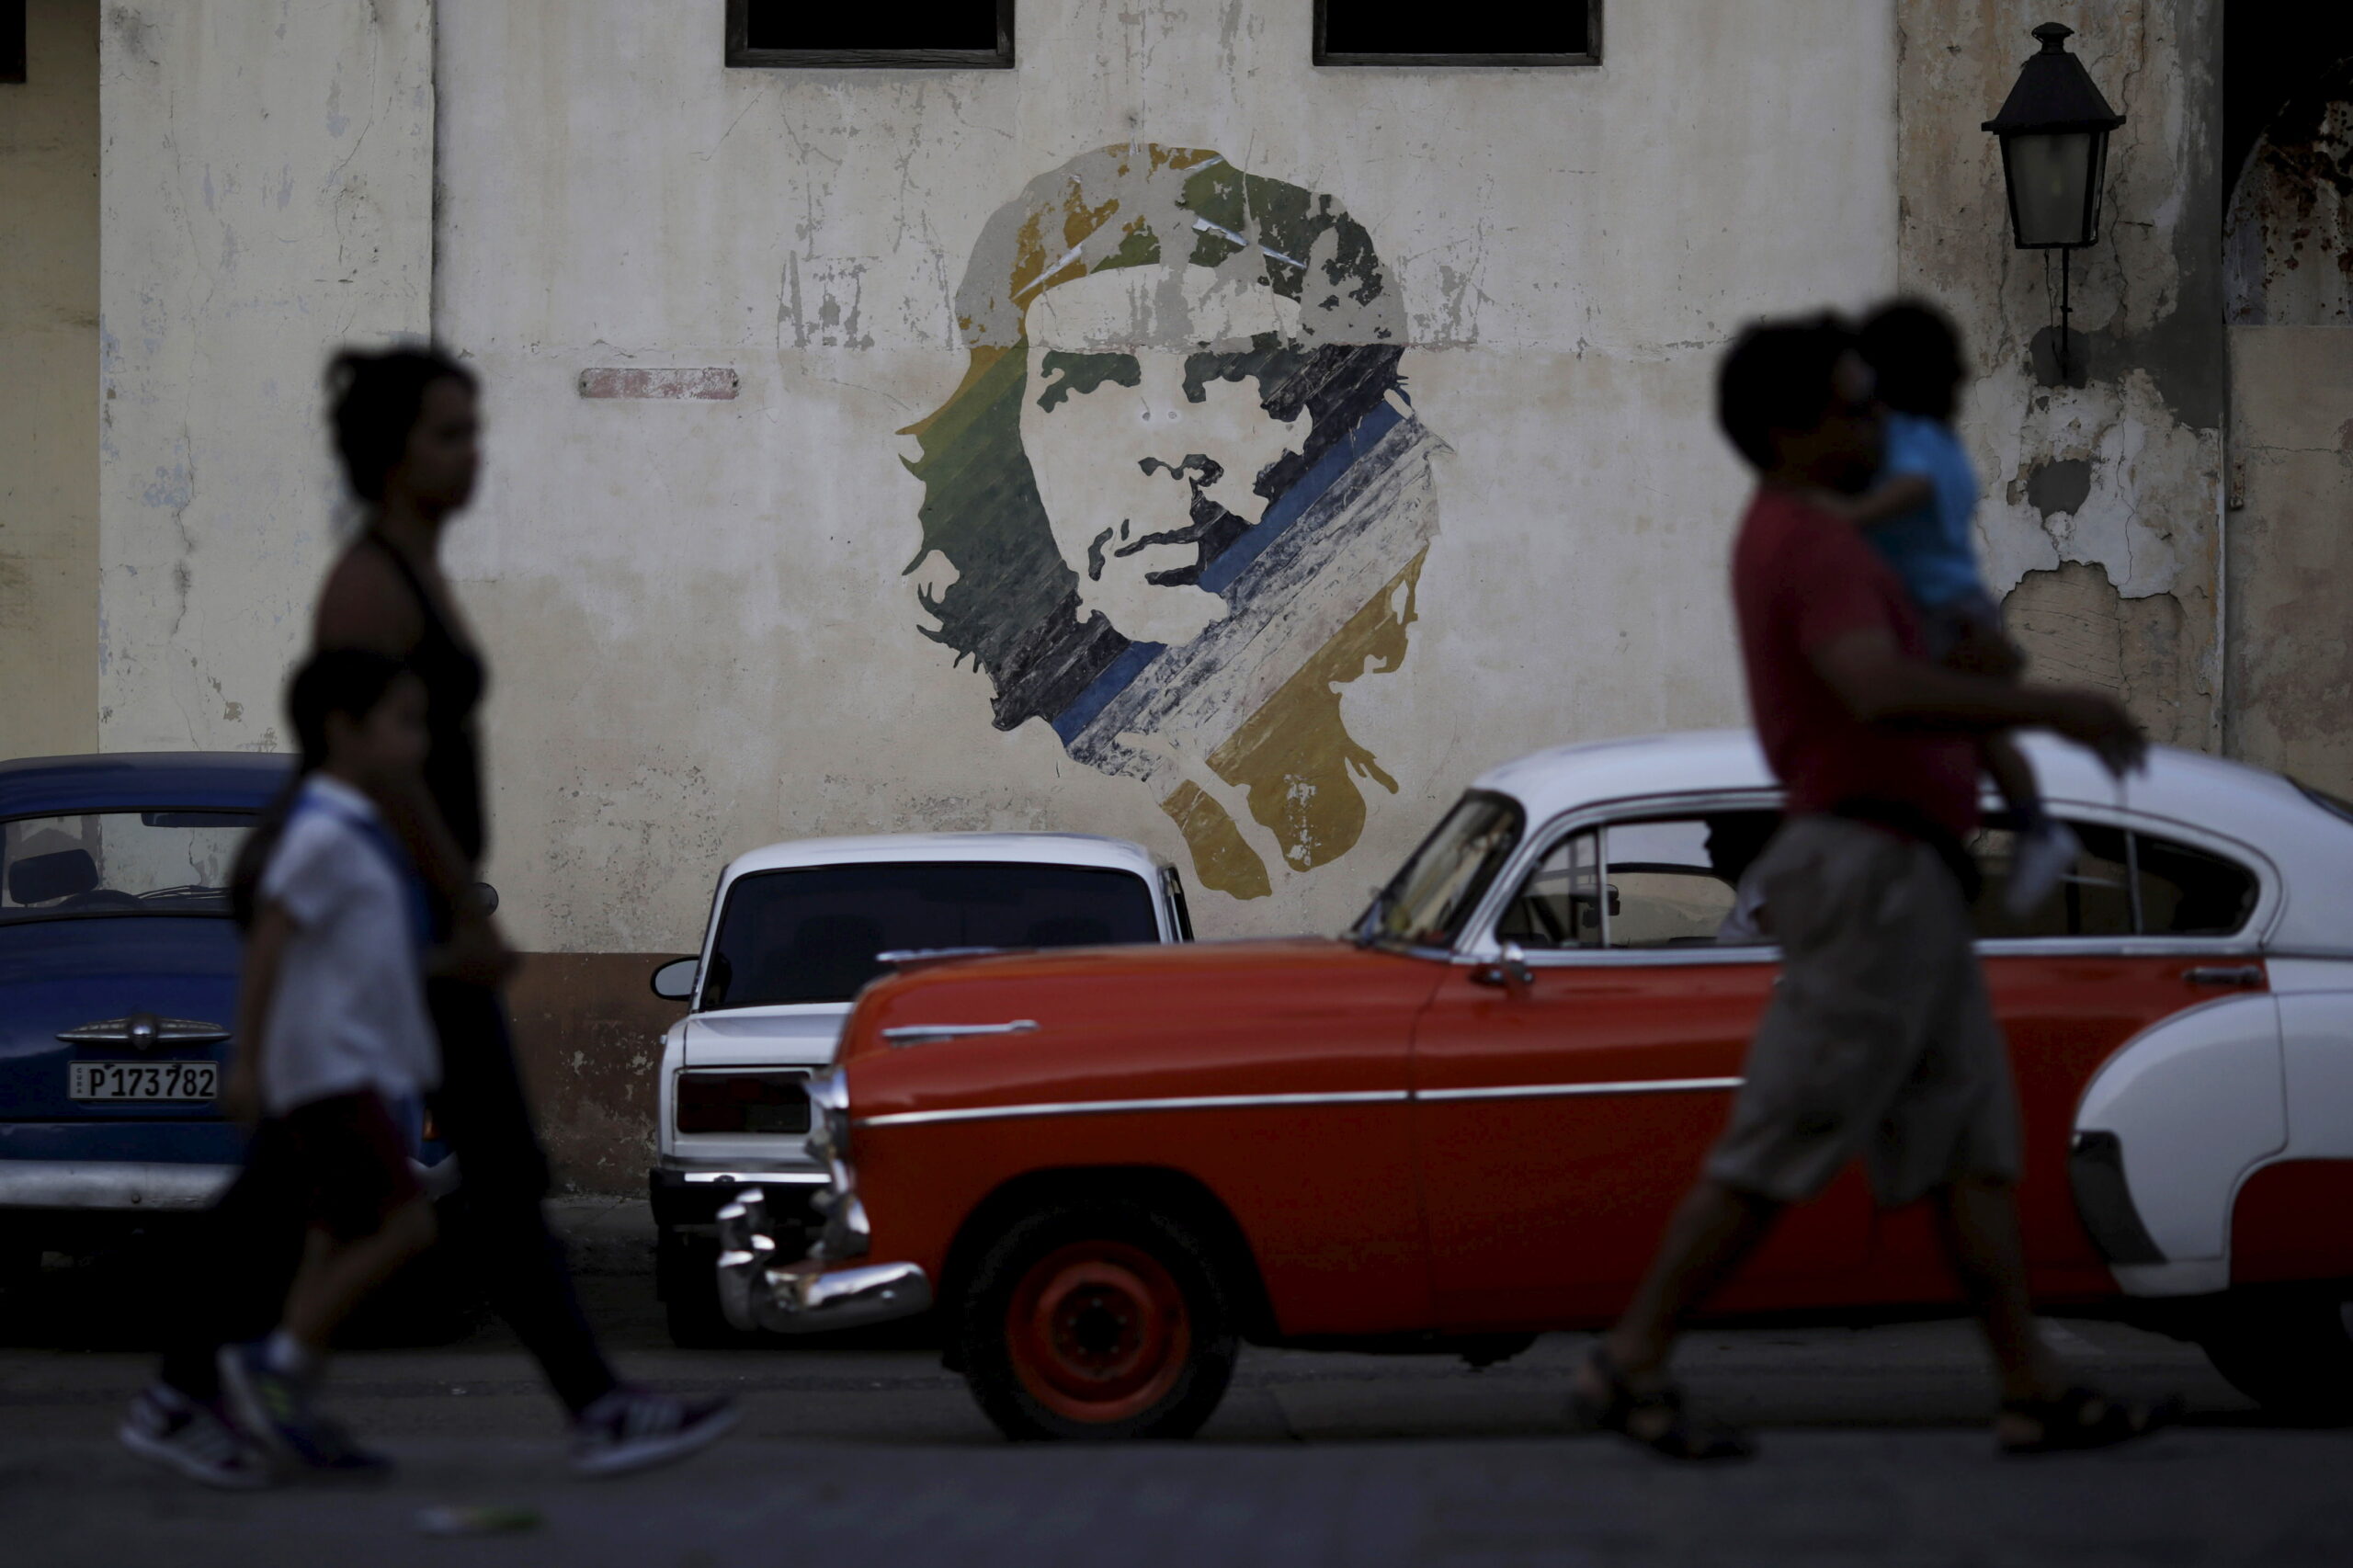 Cuba: Alberto Navarro